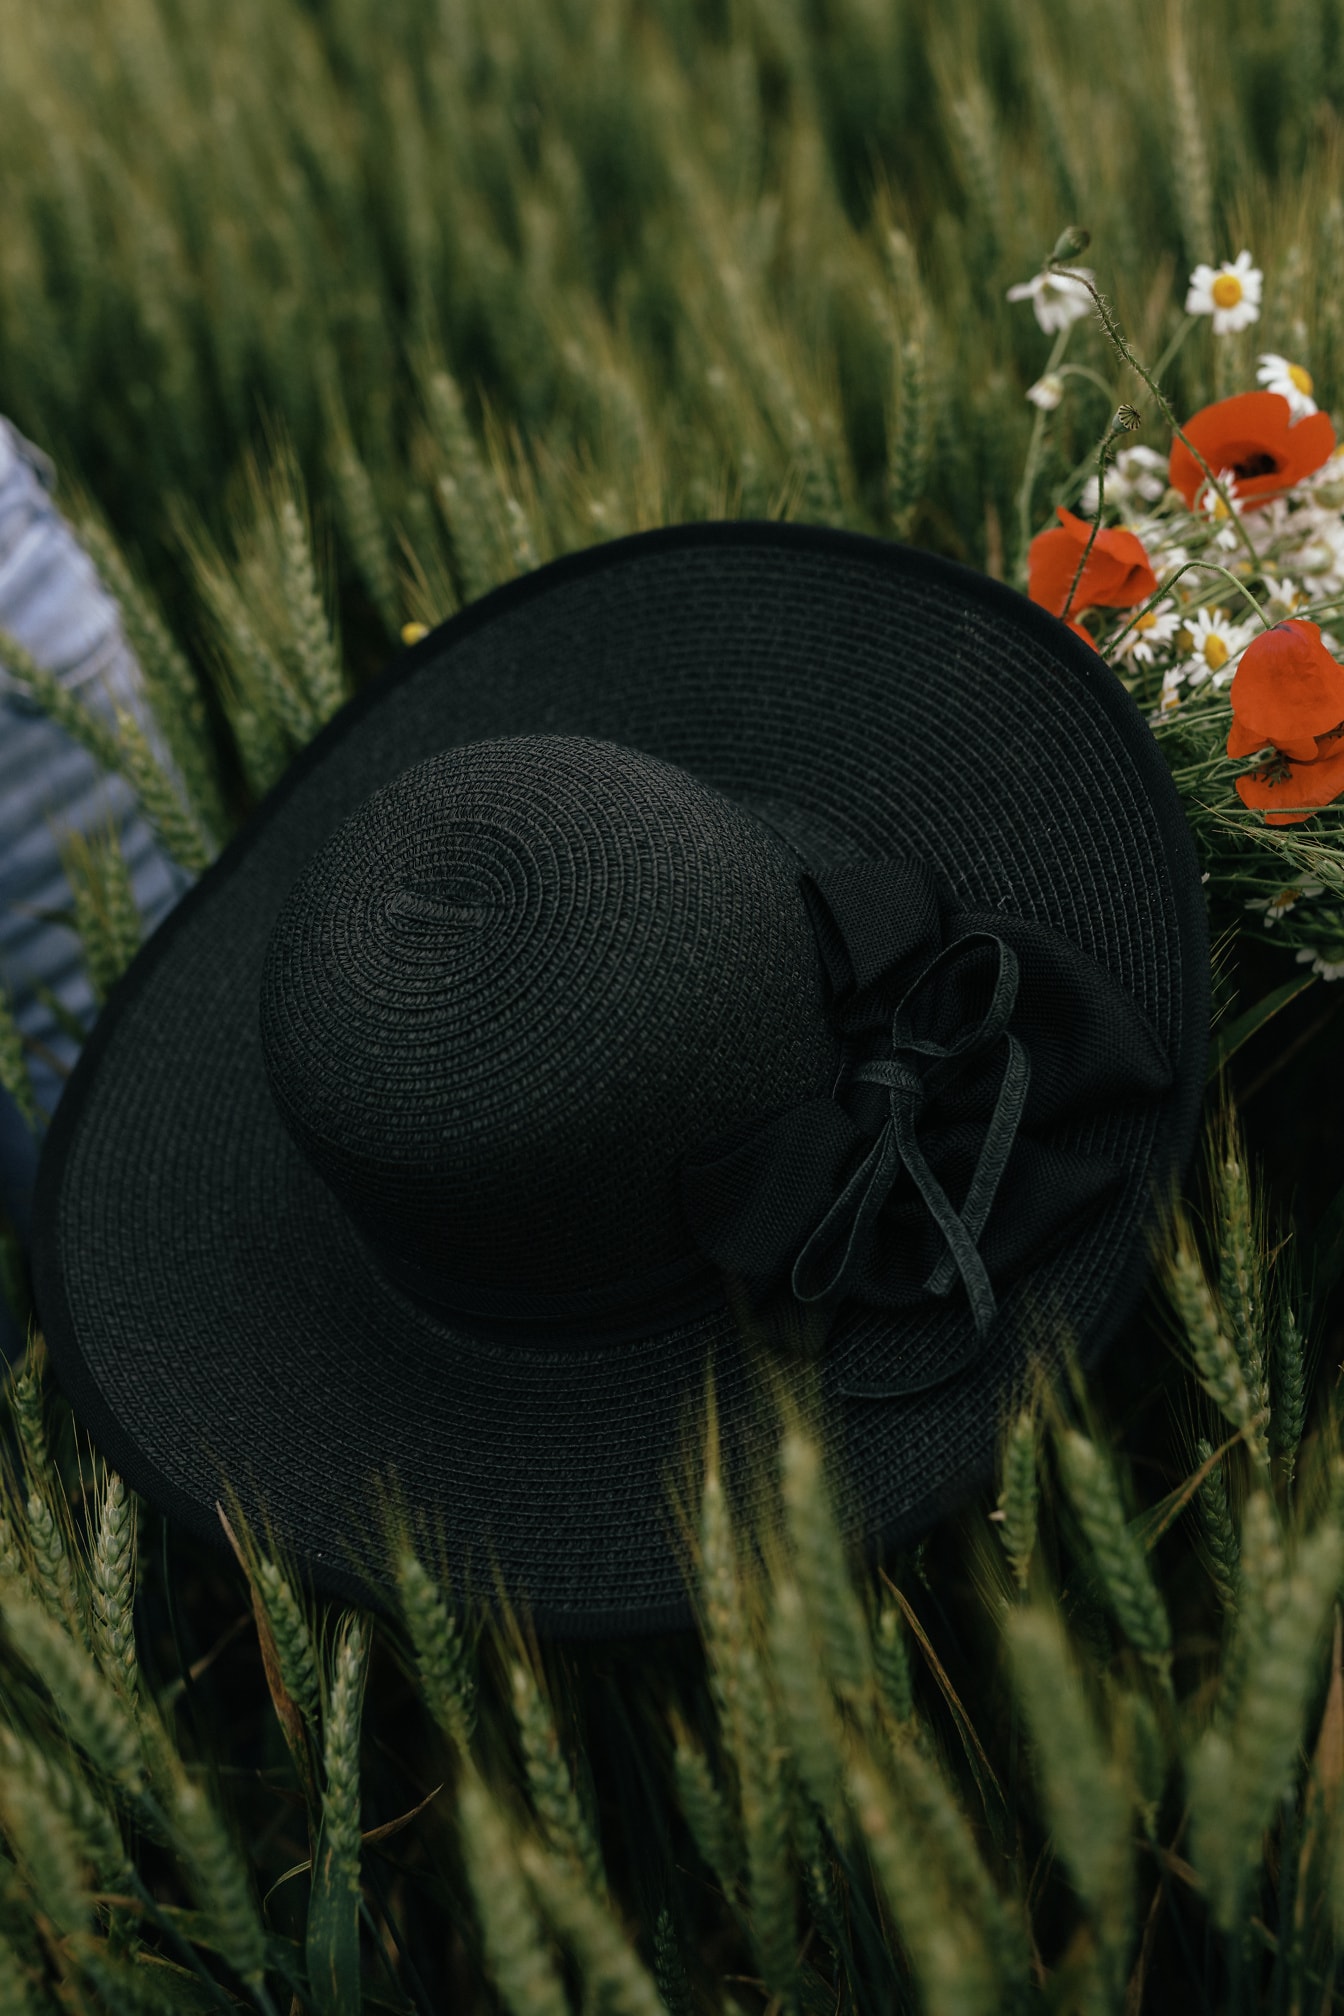 Sort fashionabel hat på en grøn hvede i marken med blomster